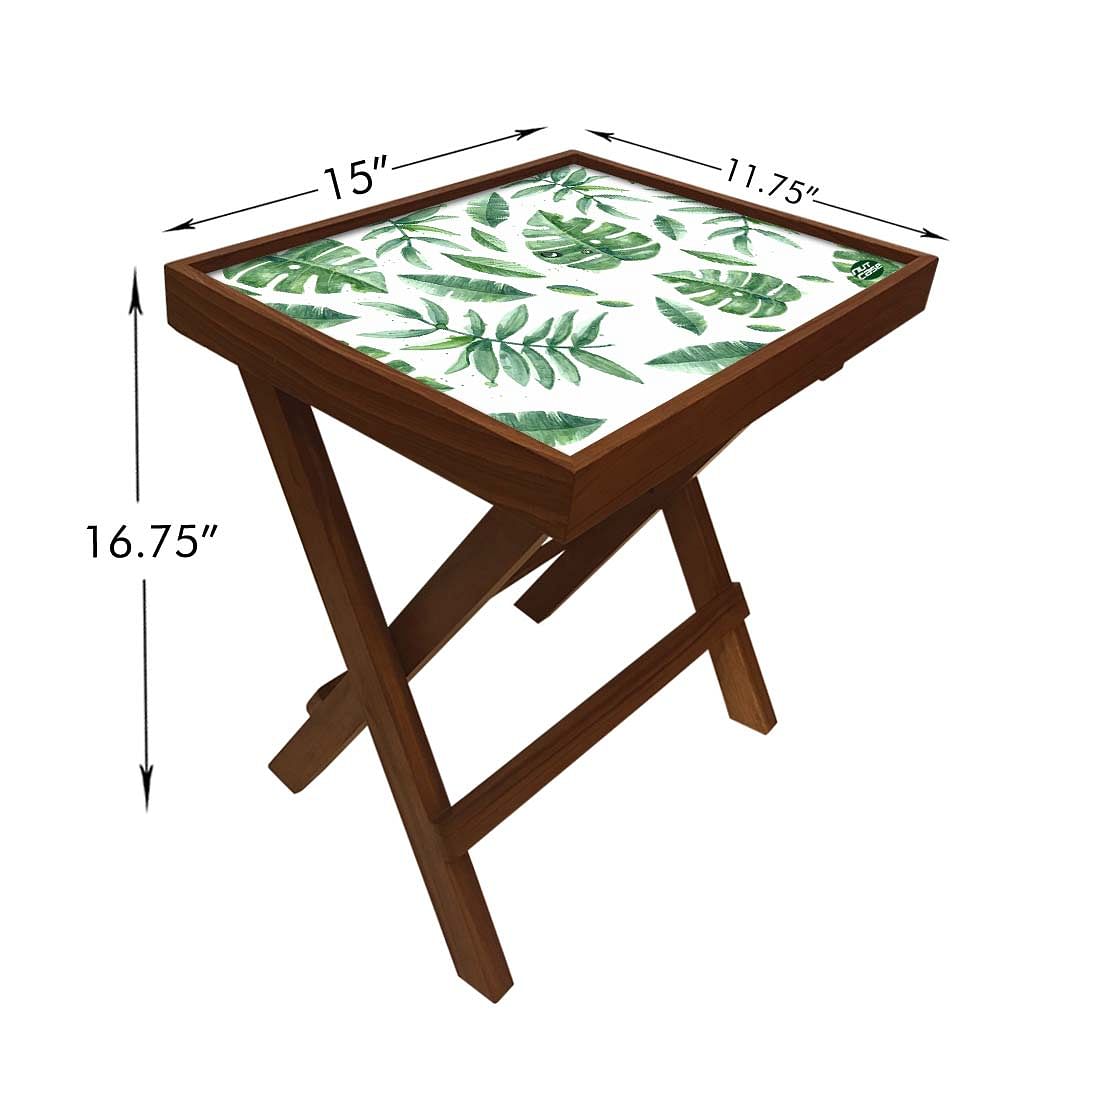 Folding Side Table - Teak Wood - Beautiful Leaves Nutcase